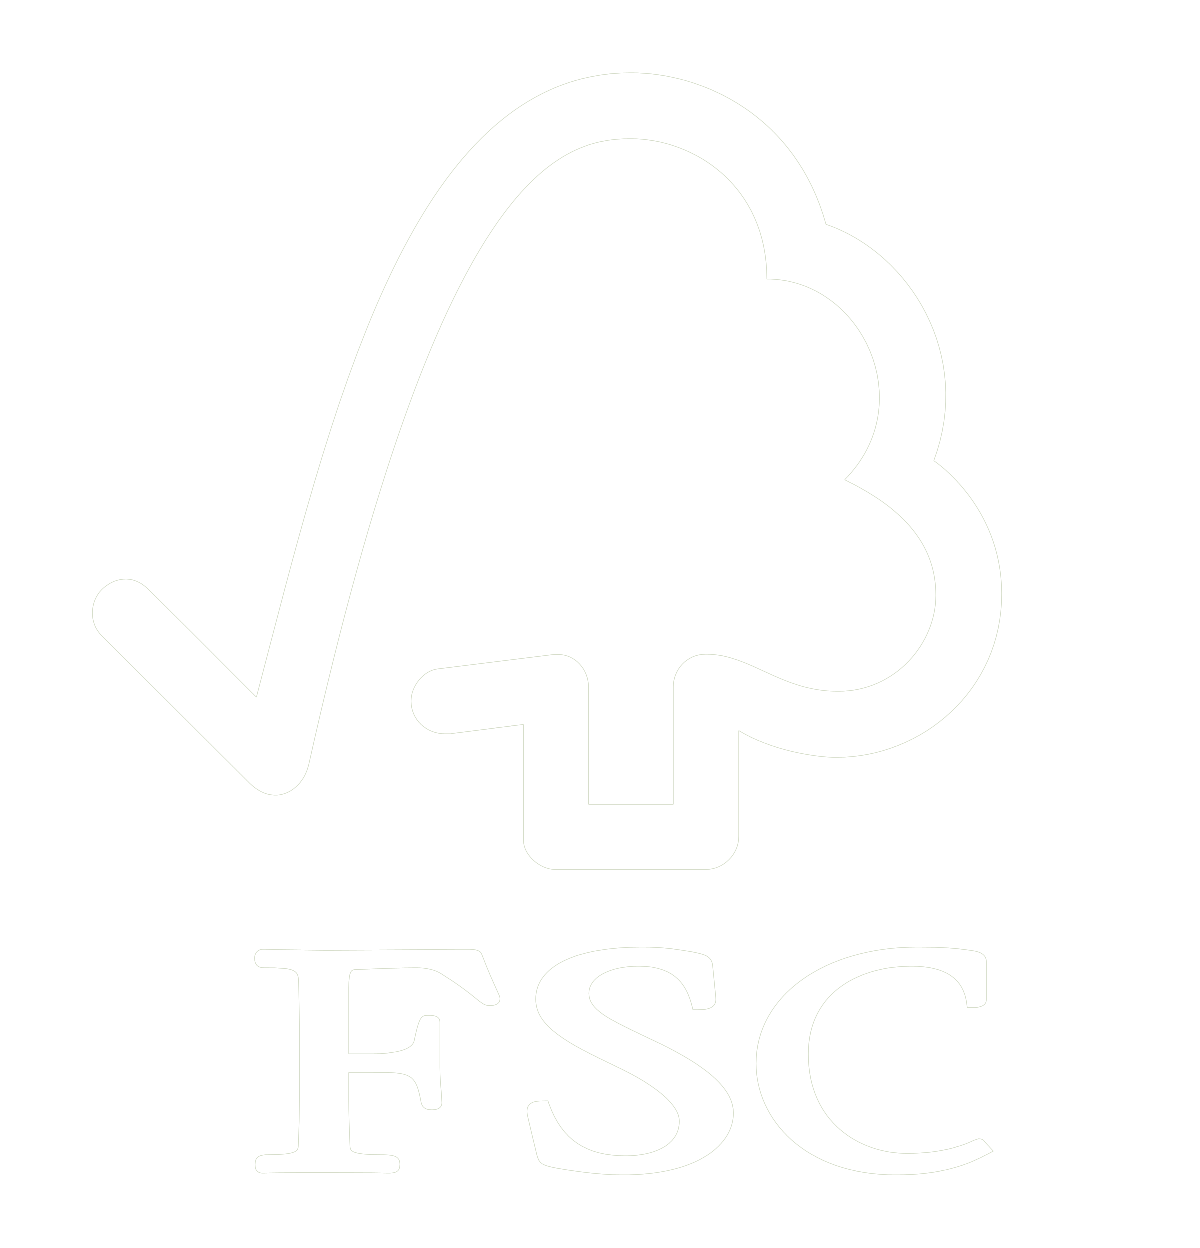 Alle unseren eingesetzten Hölzer sind FSC-zertifiziet und stammen aus nachhaltiger Forstwirtschaft